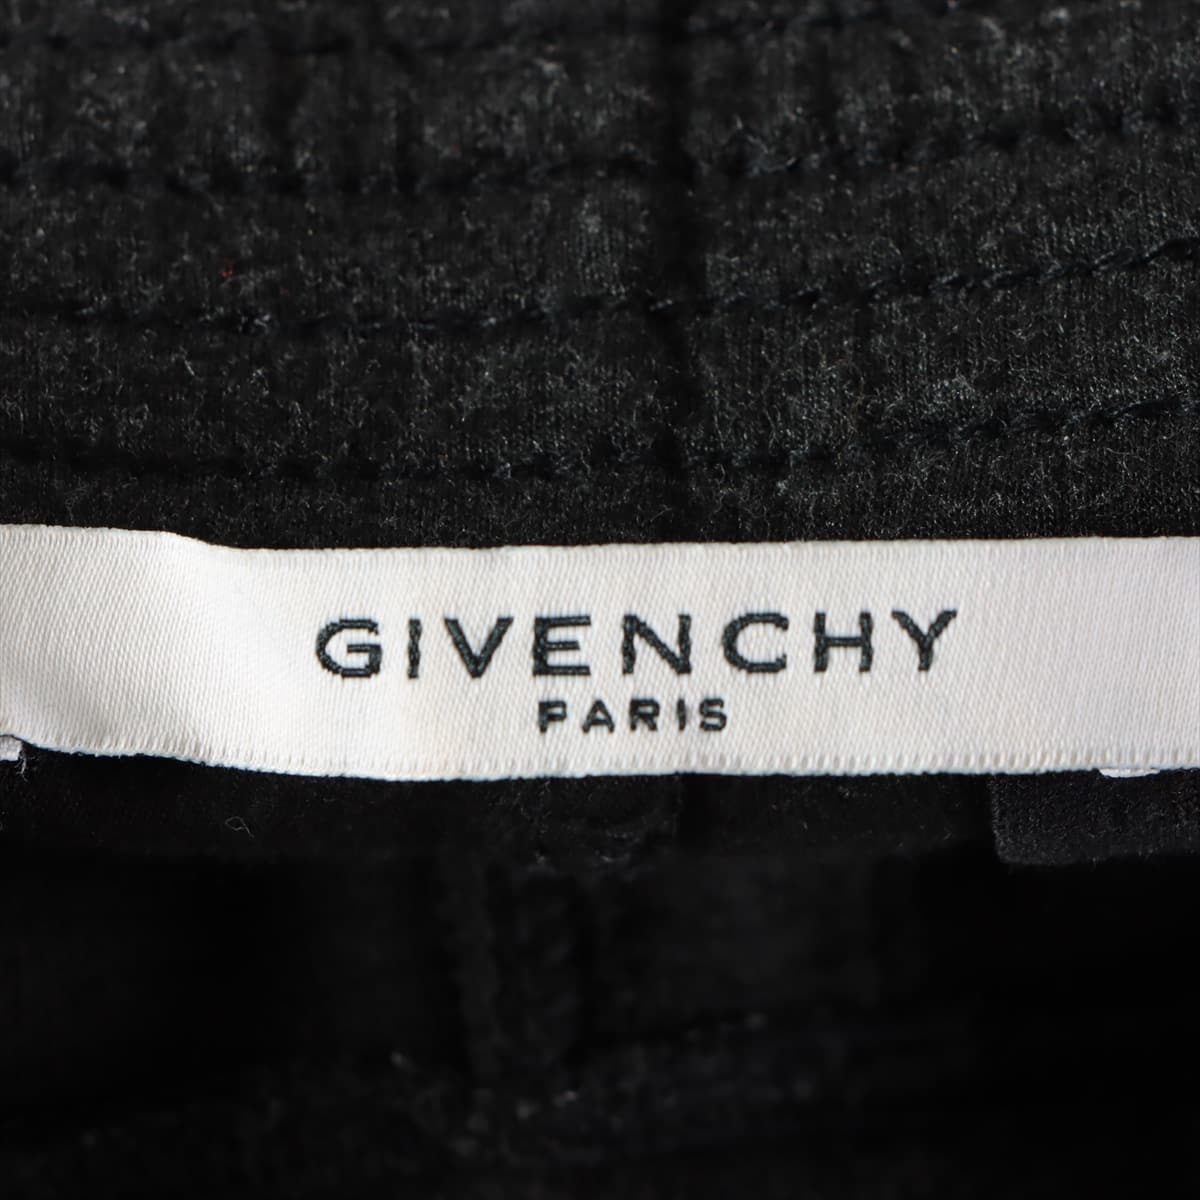 Givenchy Rayon * Naylon Sweatpants S Men's Black